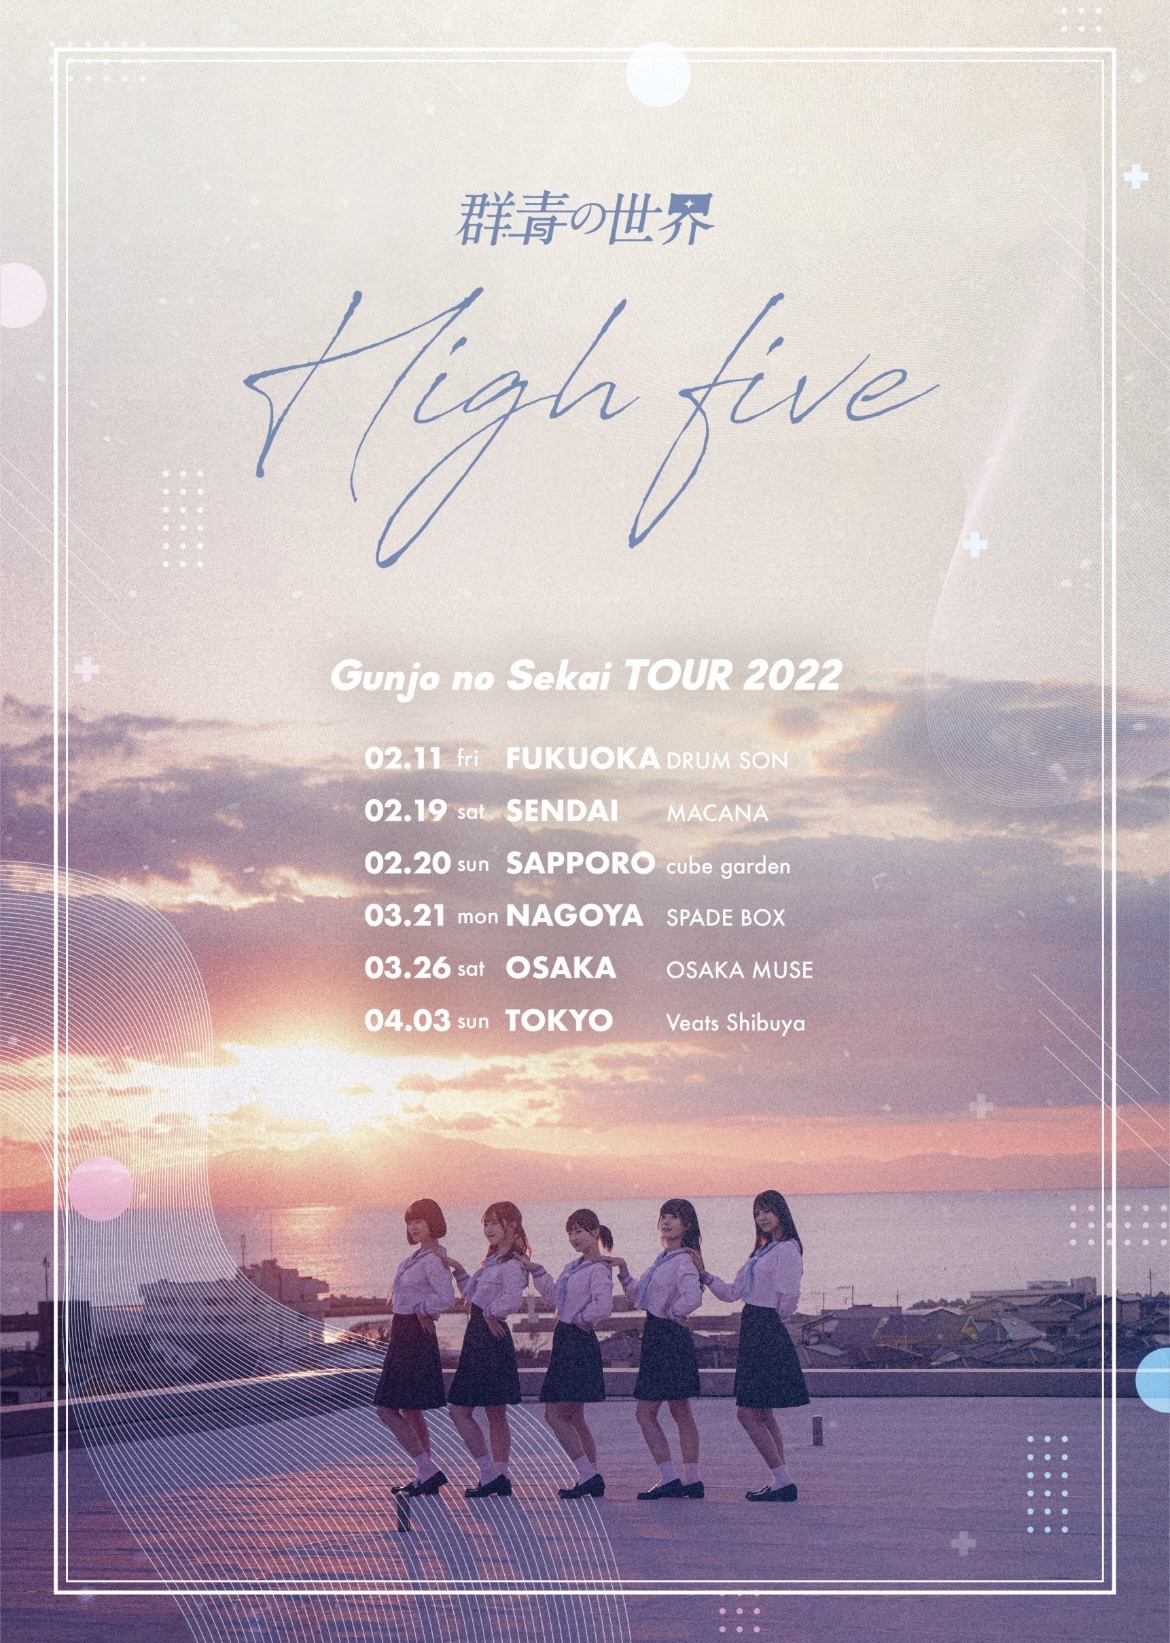 群青の世界 全国ツアー「High five」東京公演